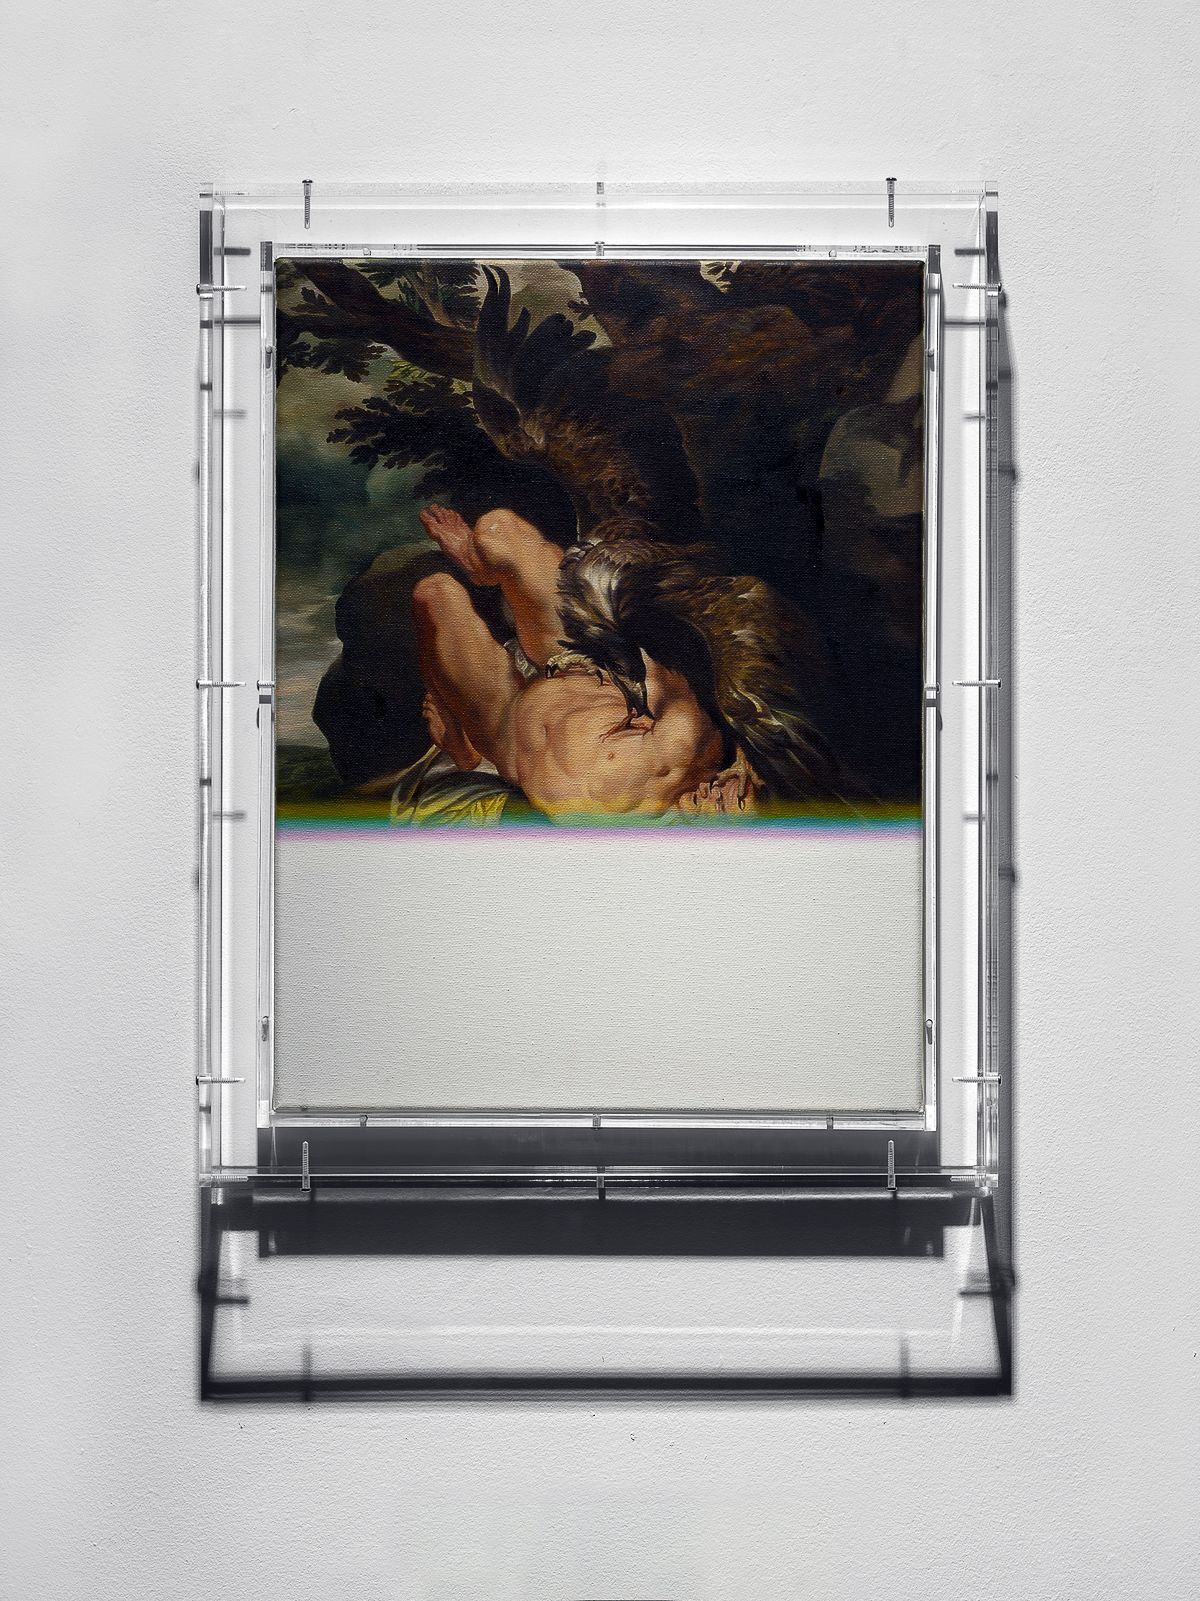 Мэт Коллишоу. Expiration Painting, Talons, 2016 г. Холст, масло, дерево, плексиглас, 47,3 x 37,3 x 5,3 см